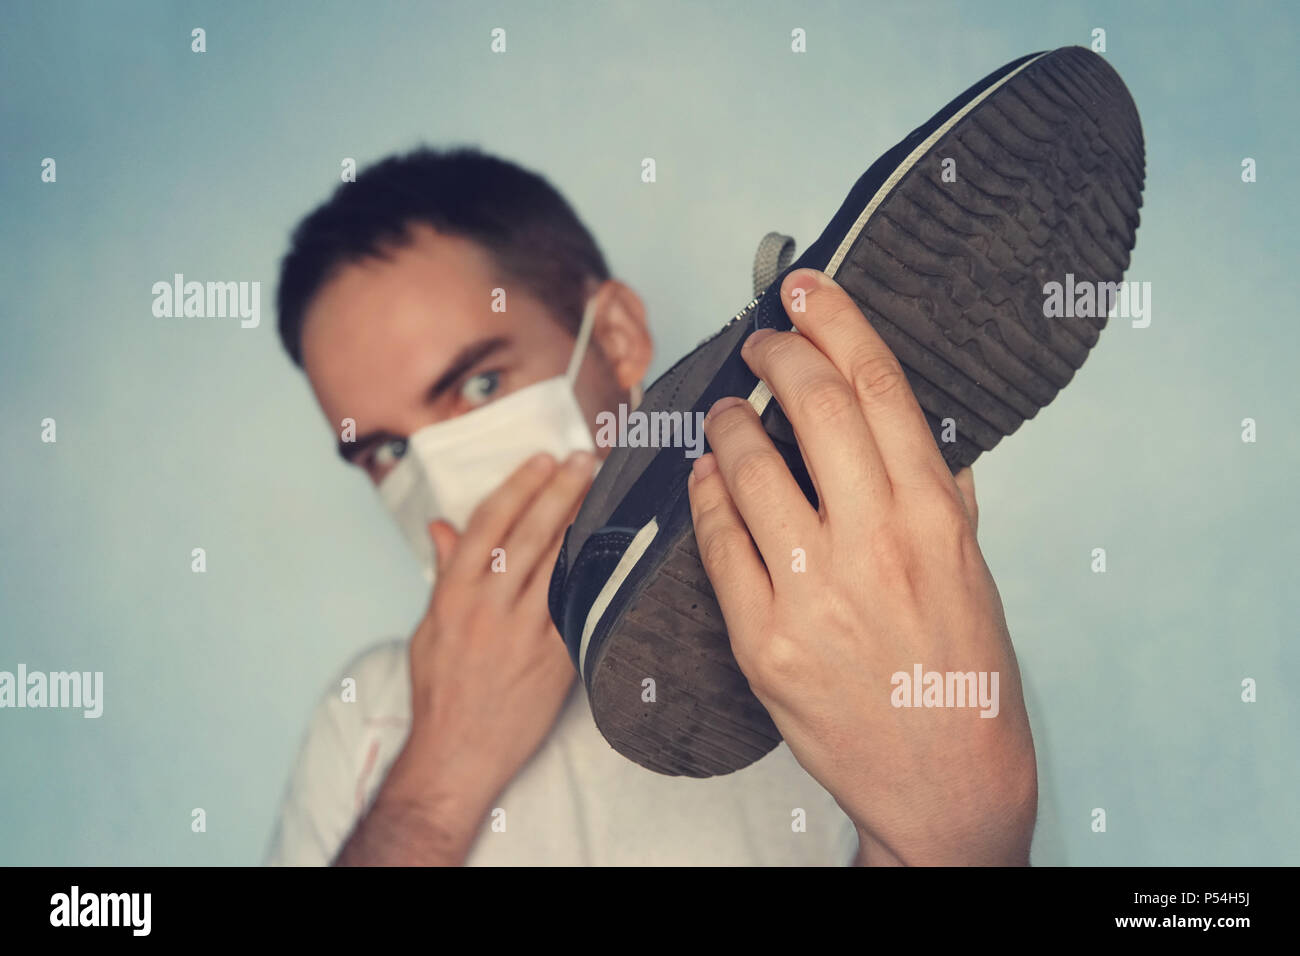 L'uomo con la maschera è azienda sporca puzzolente e cassoncino di pulizia - odore sgradevole concetto, sporca e puzzolente sneakers. Guarda le sneakers Foto Stock